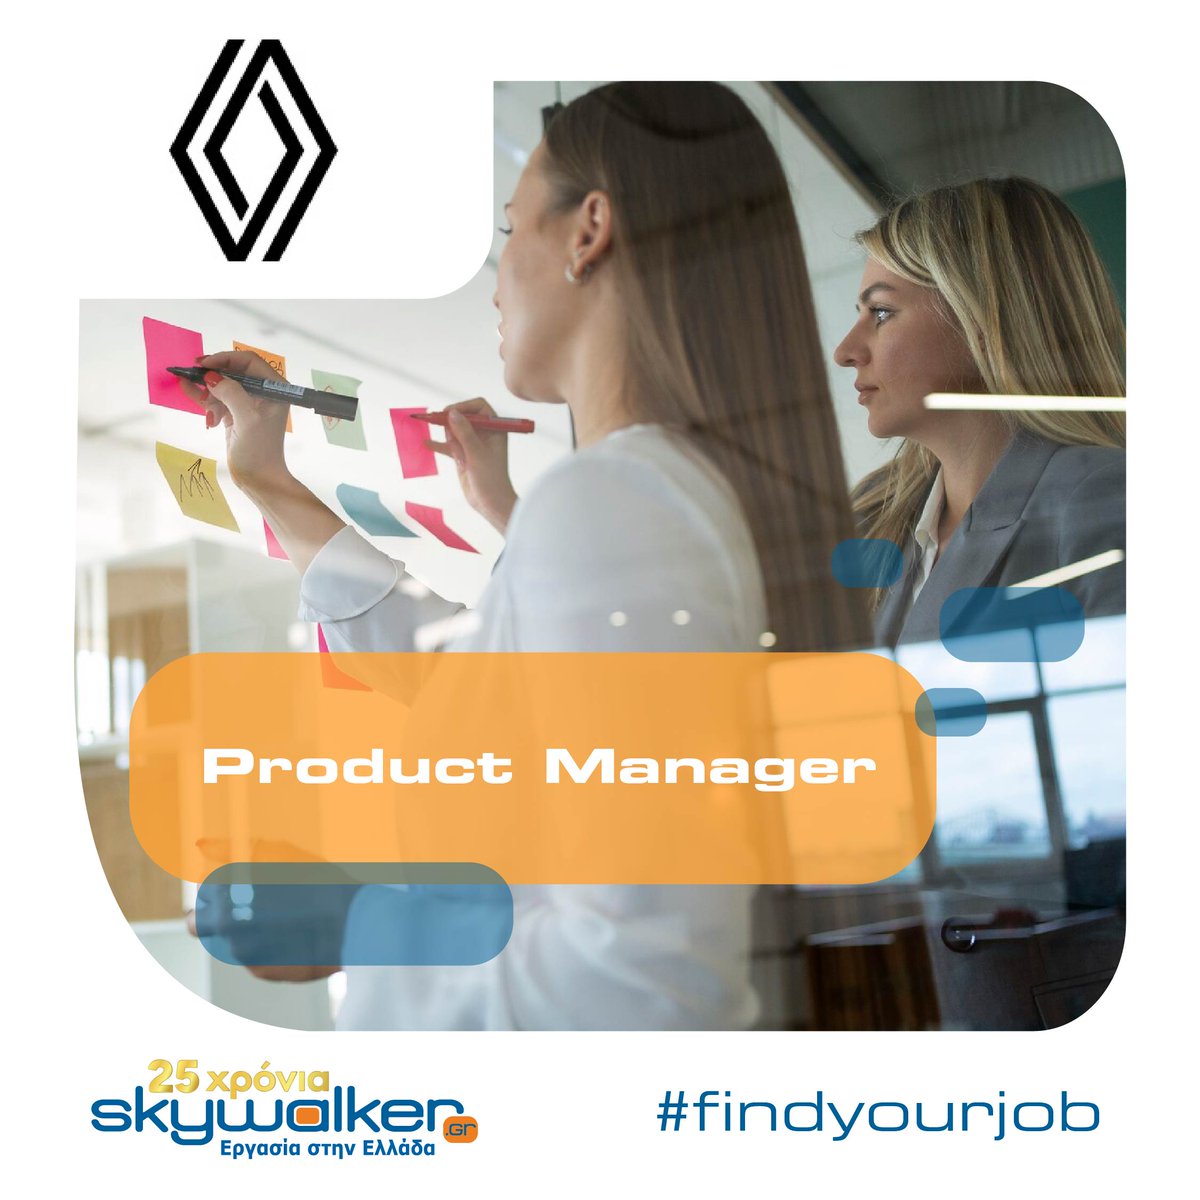 Product Manager

swr.gr/QnAzX

#skywalkergr #ergasia #job #sendyourcv #findyourjob #productmanager